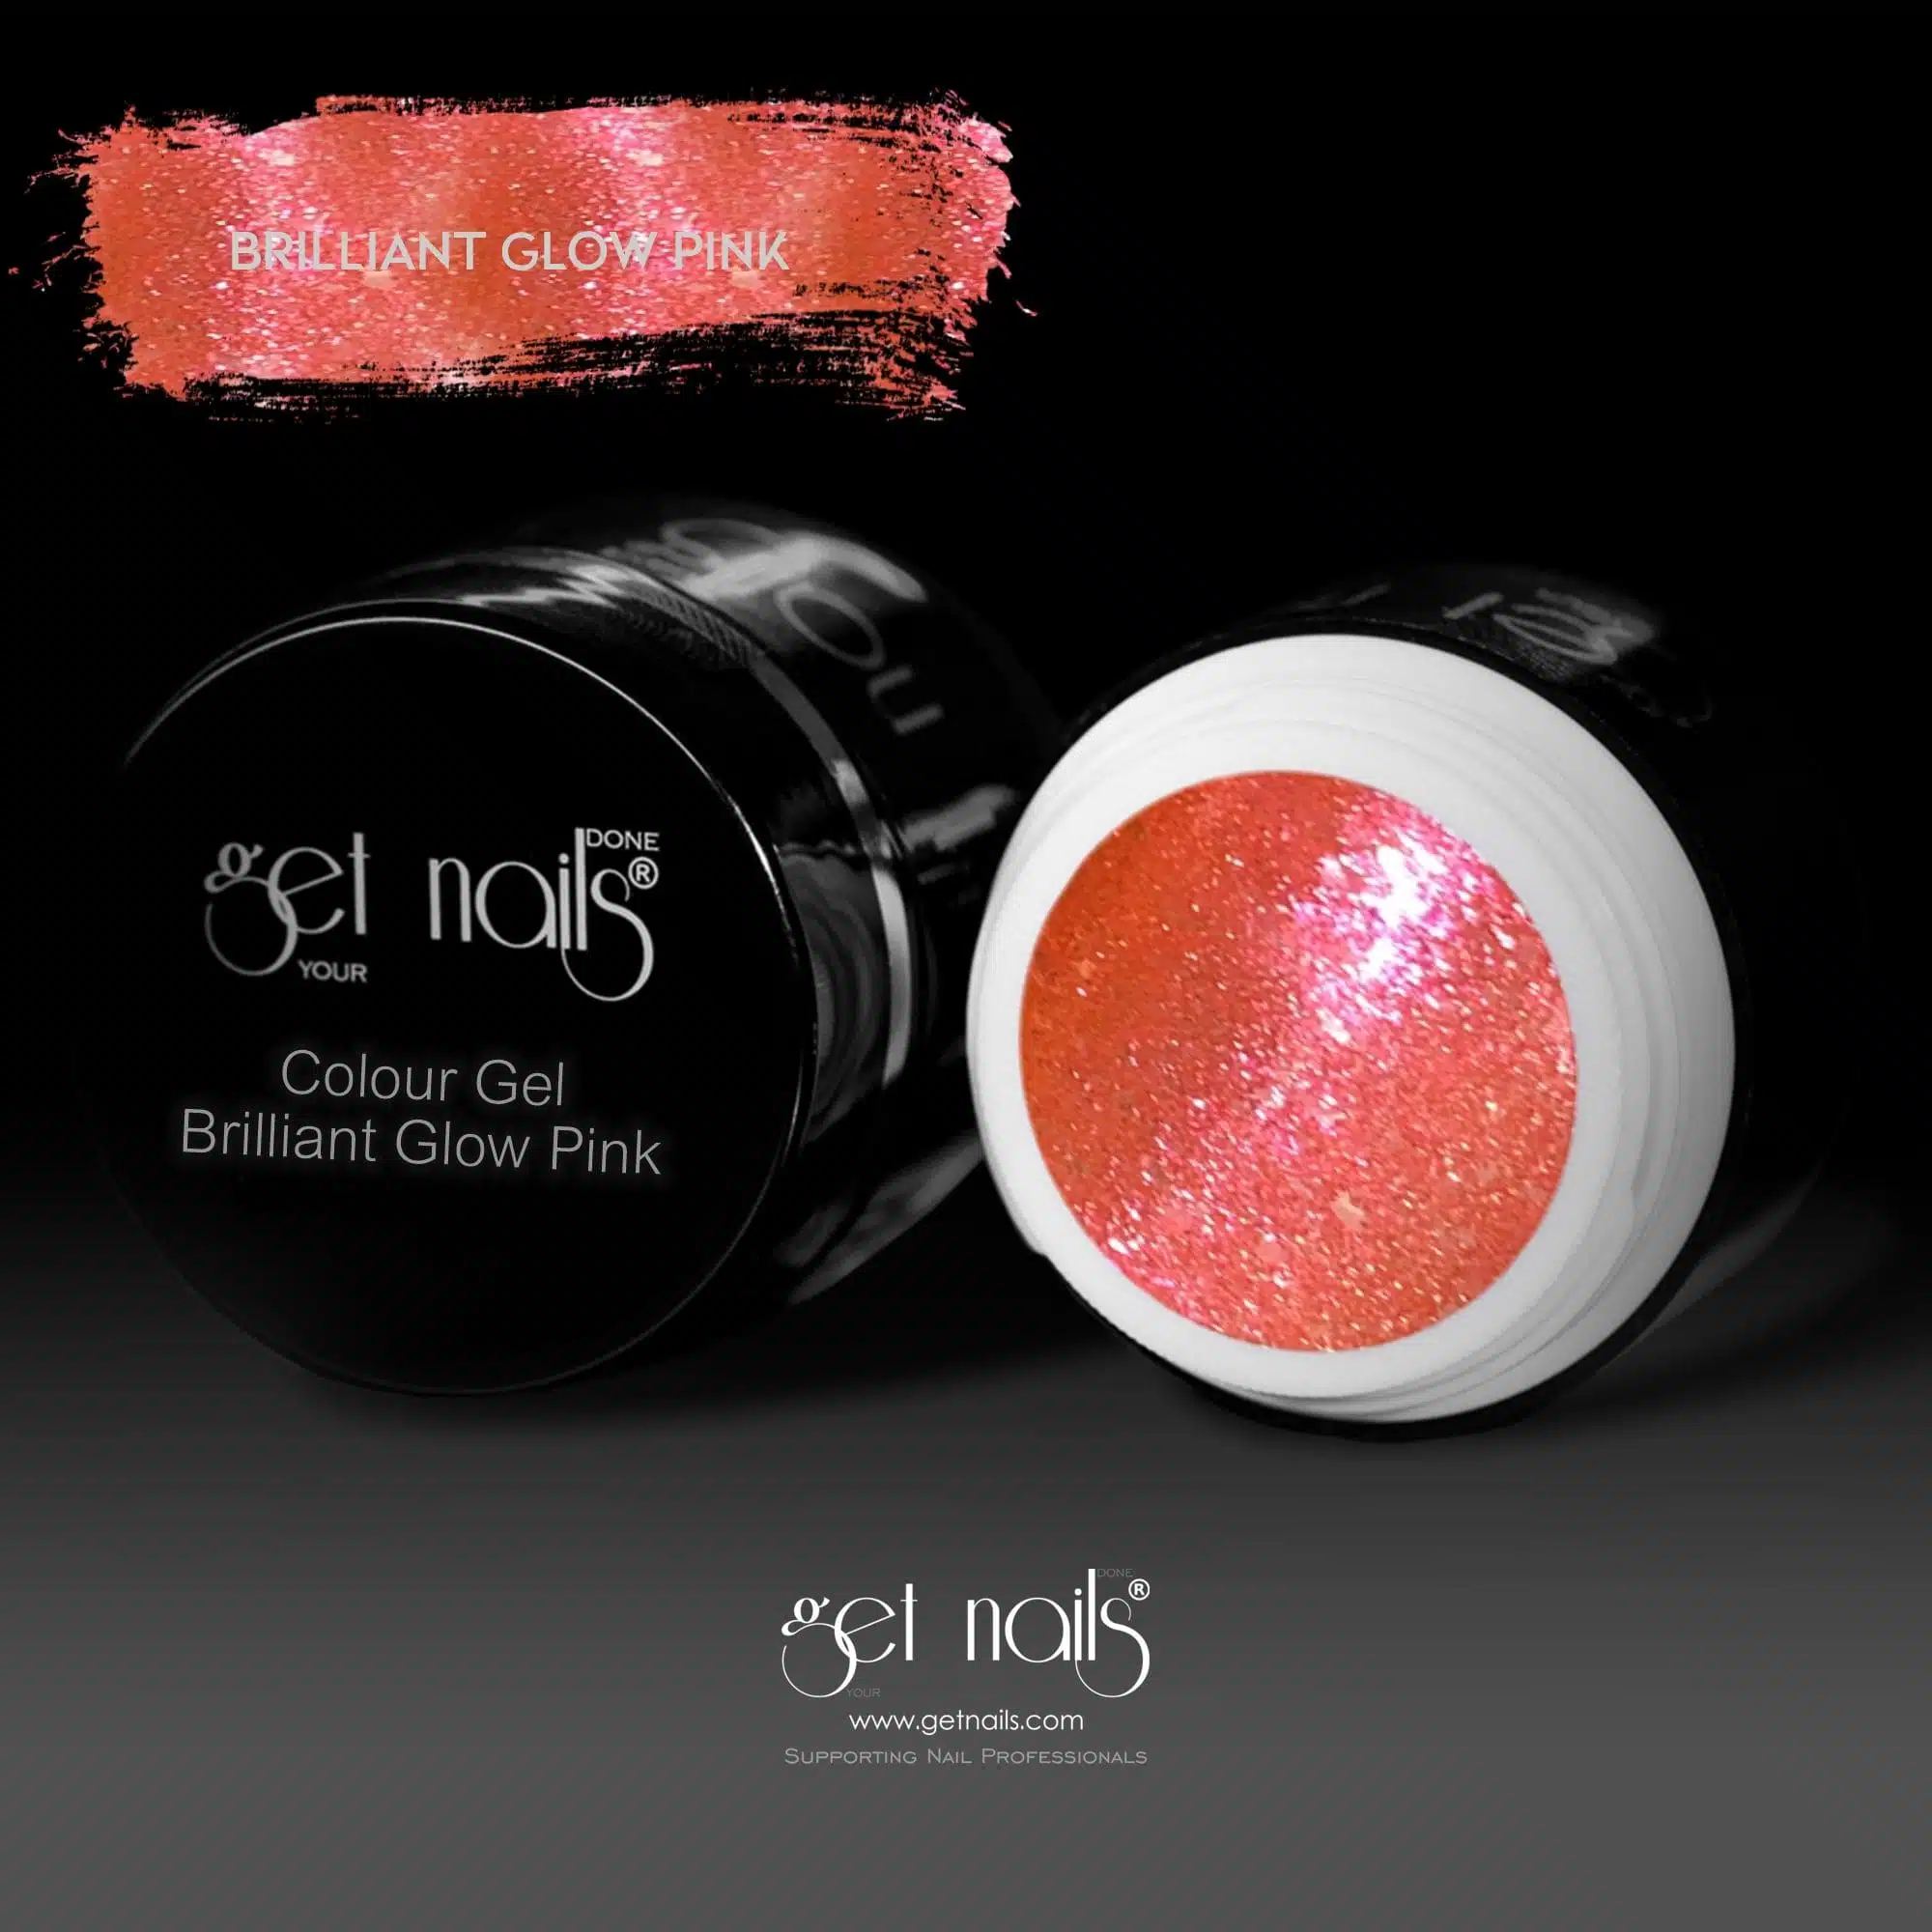 Get Nails Austria - Colour Gel Brilliant Glow Pink 5g